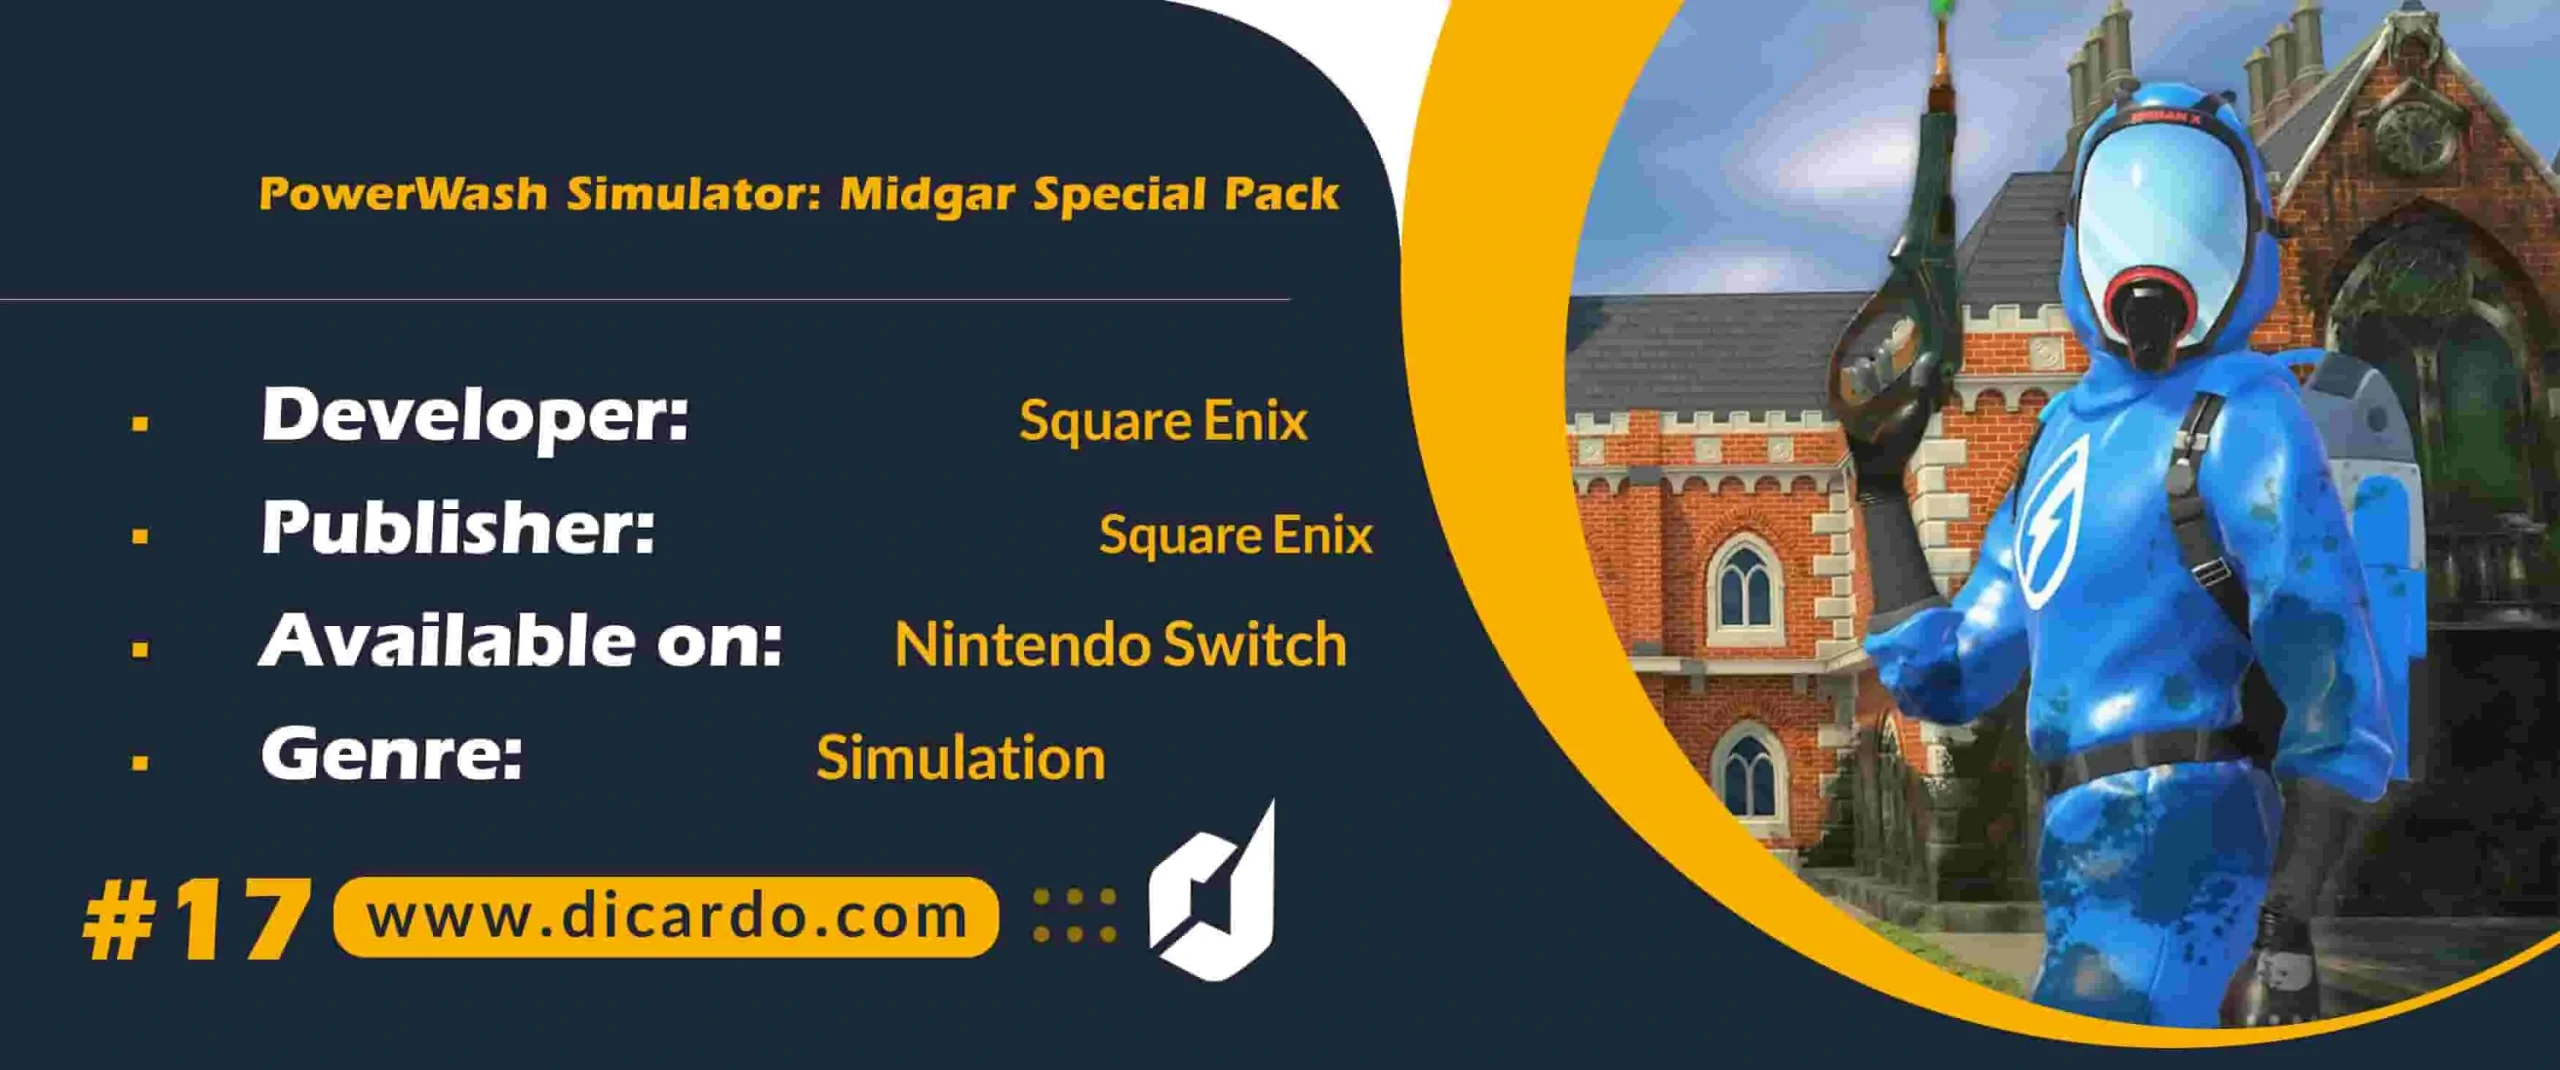 #17 پاور واش سیمولیشر میدگار اسپیشال پک PowerWash Simulator: Midgar Special Pack